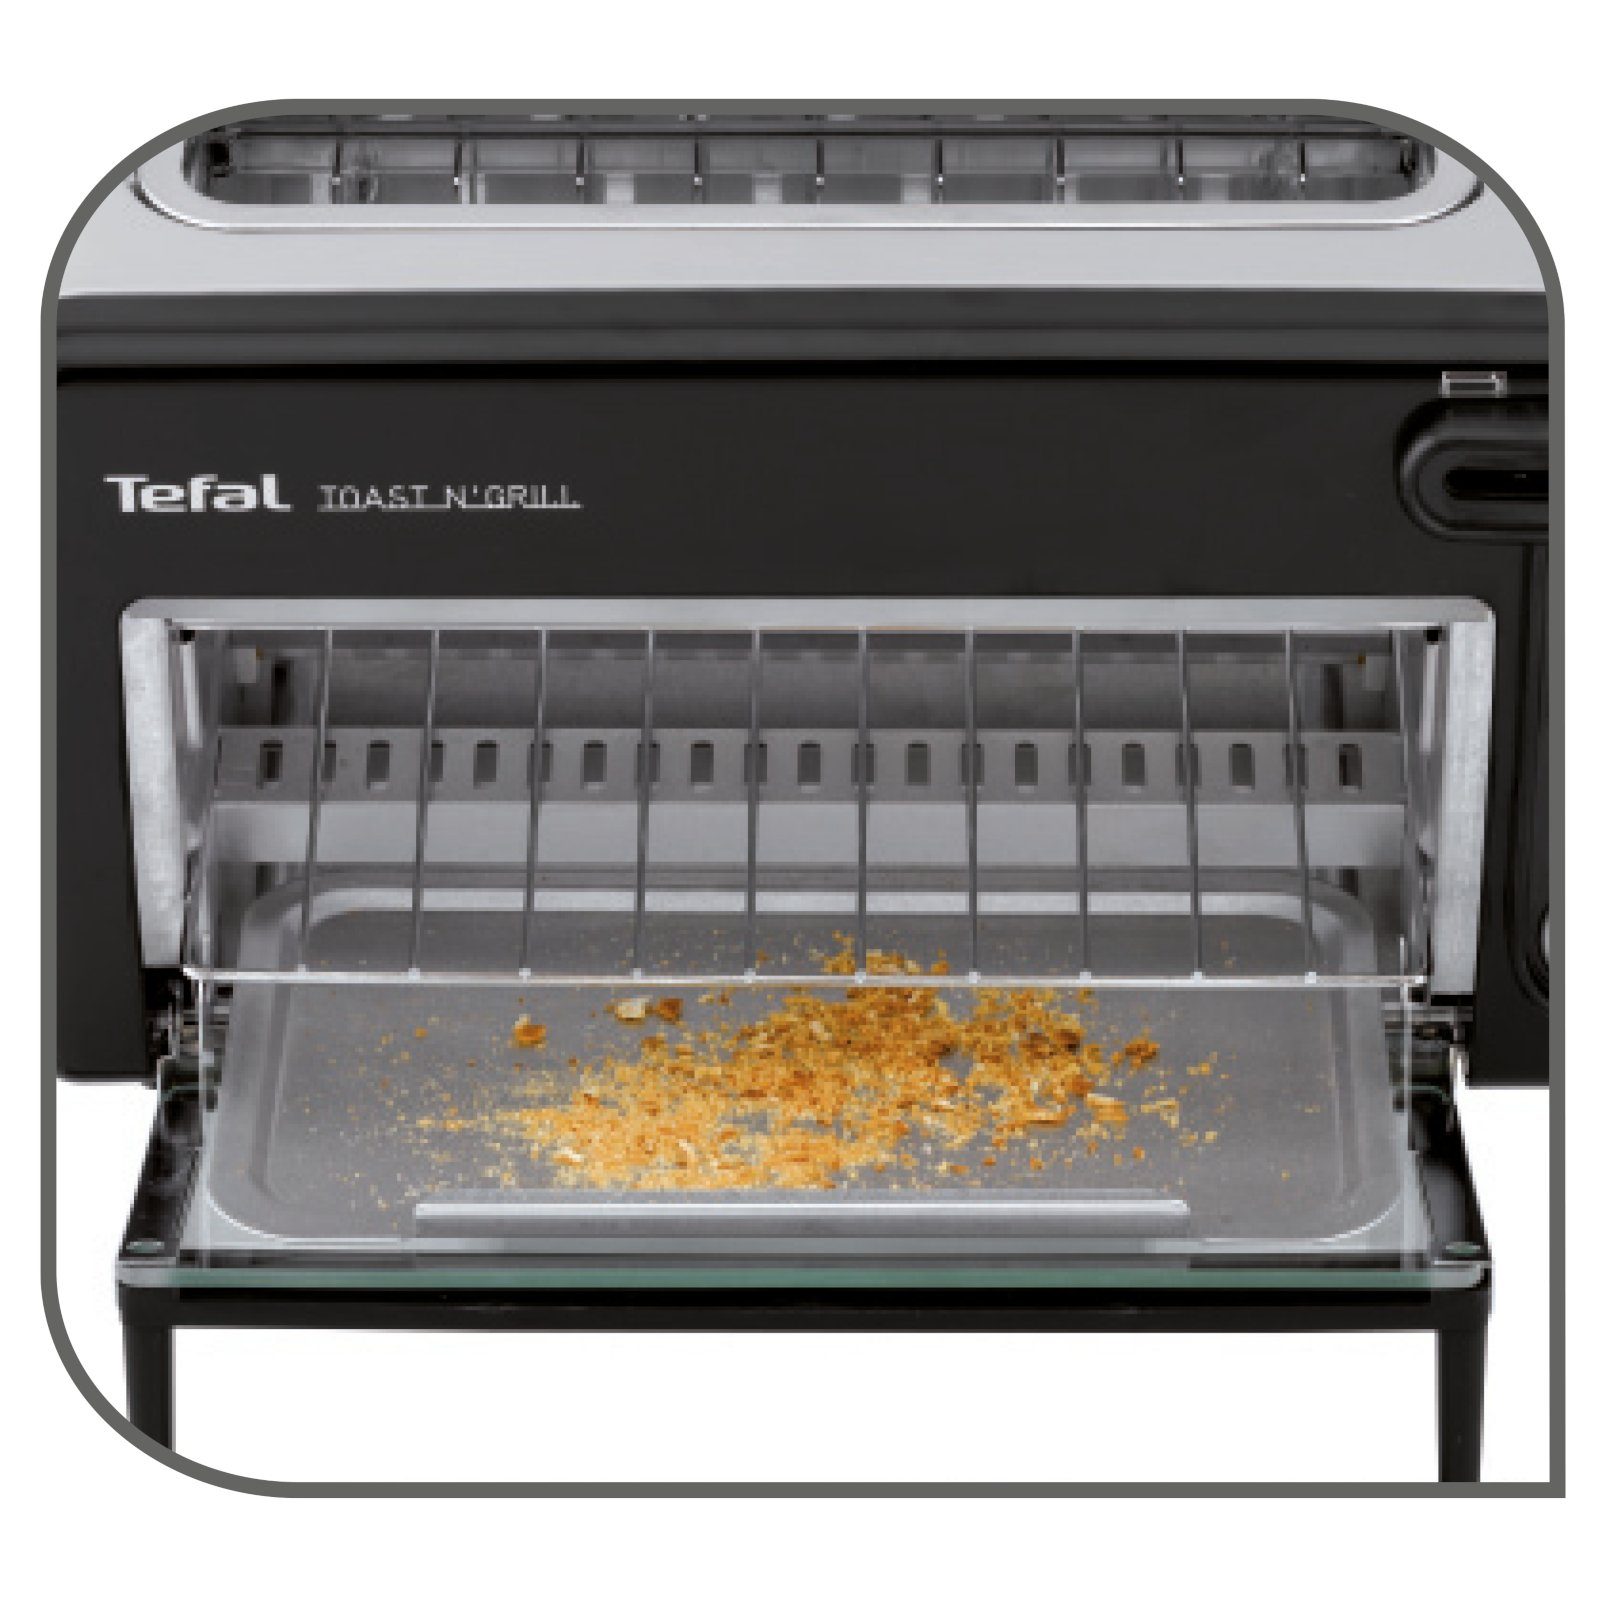 Backofen Toast Tefal n' Tischbackofen 1300 W Toaster 2-in-1-Toaster 2 TL6008 Grill Mini für Scheiben, Ofen,